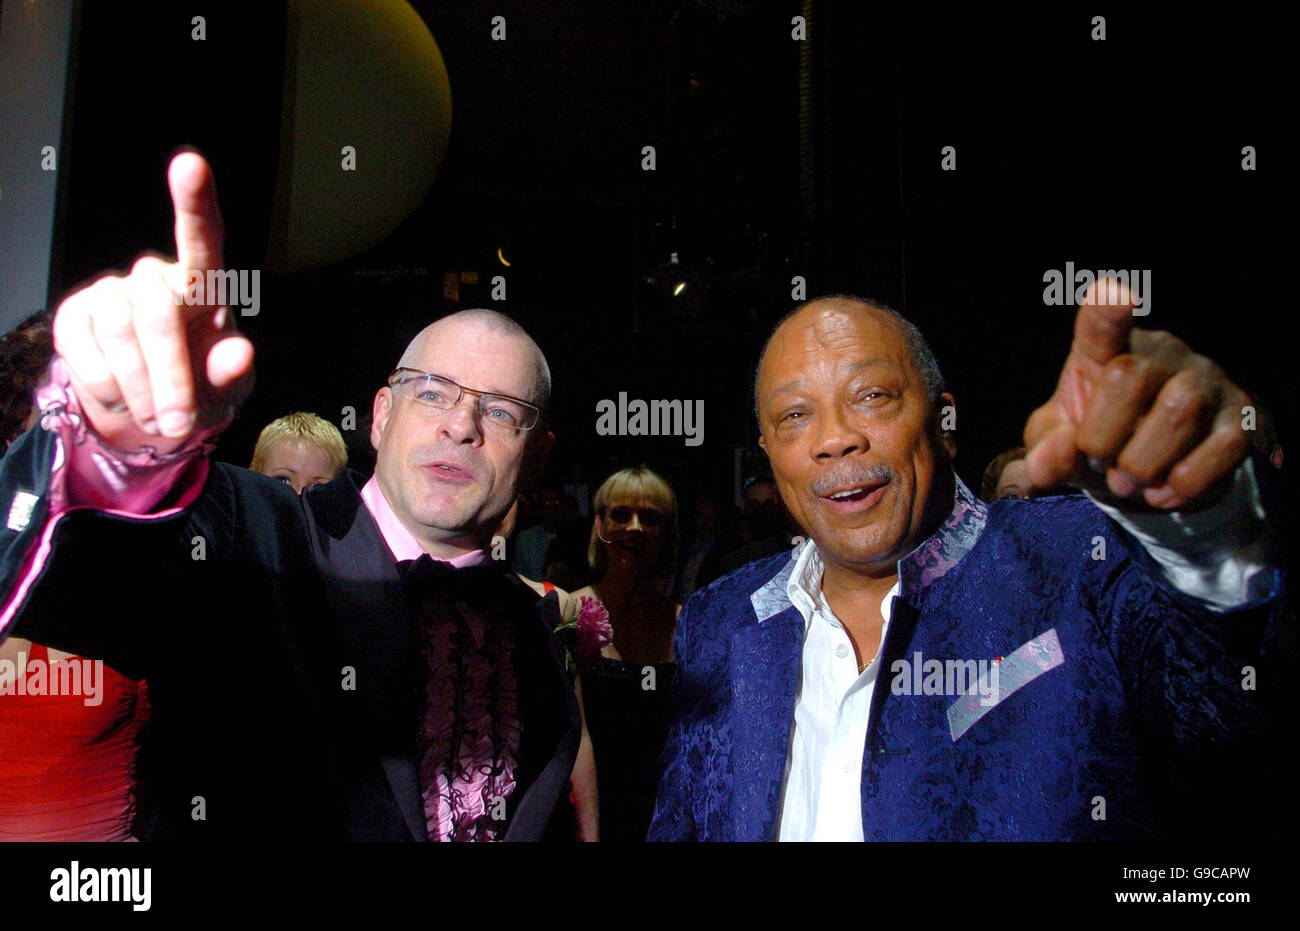 NOTA PER I REDATTORI: LA DATA DELL'IMMAGINE È IERI. Il leggendario produttore Quincy Jones (a destra) incontra il direttore dell'orchestra di Sinatra, Gareth Valentine, sul palco del London Palladium, nel centro di Londra. Foto Stock